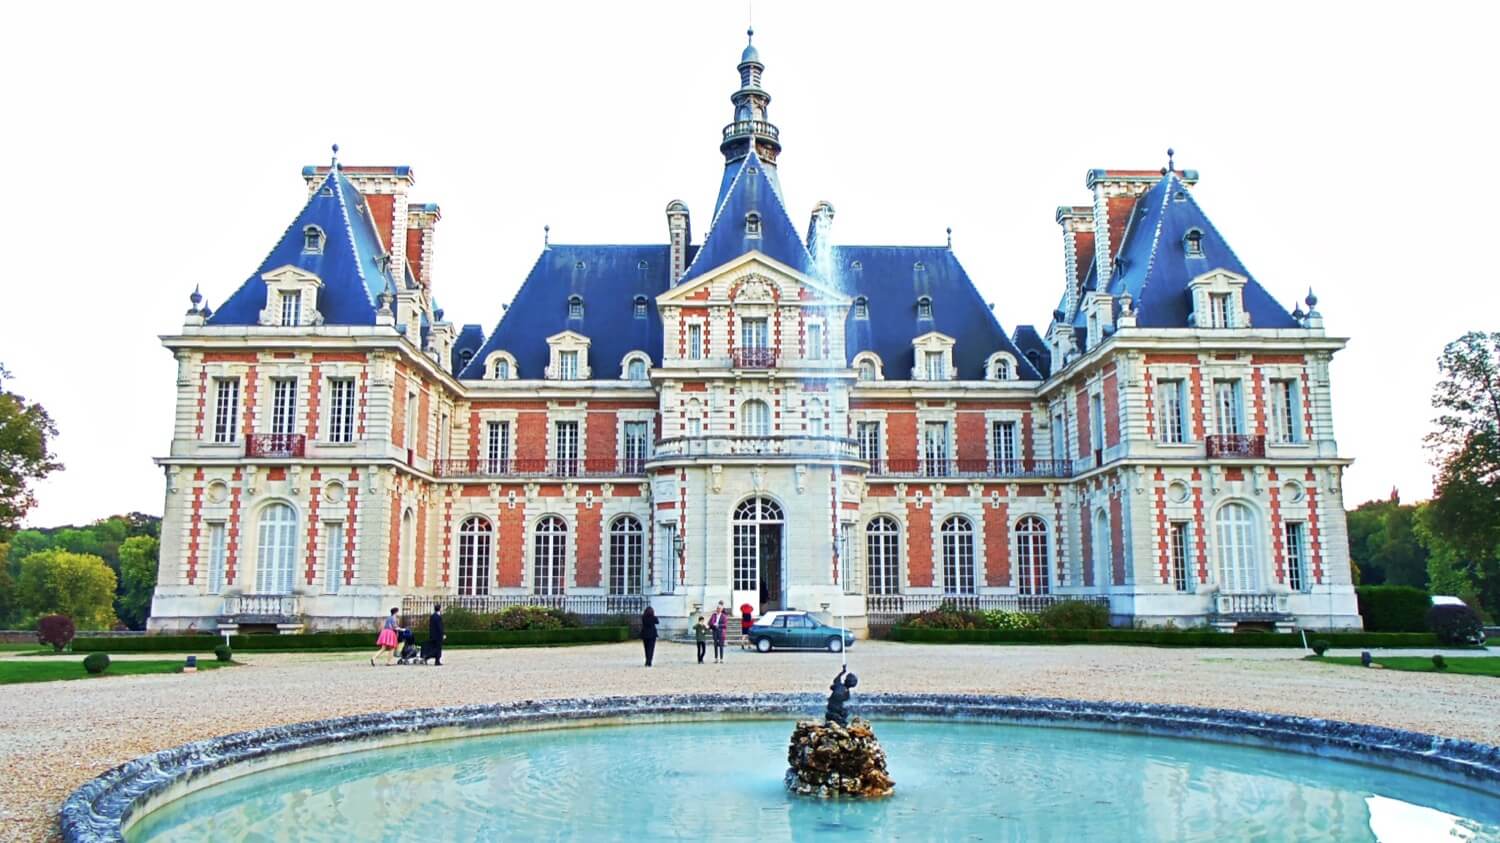 Château de Baronville